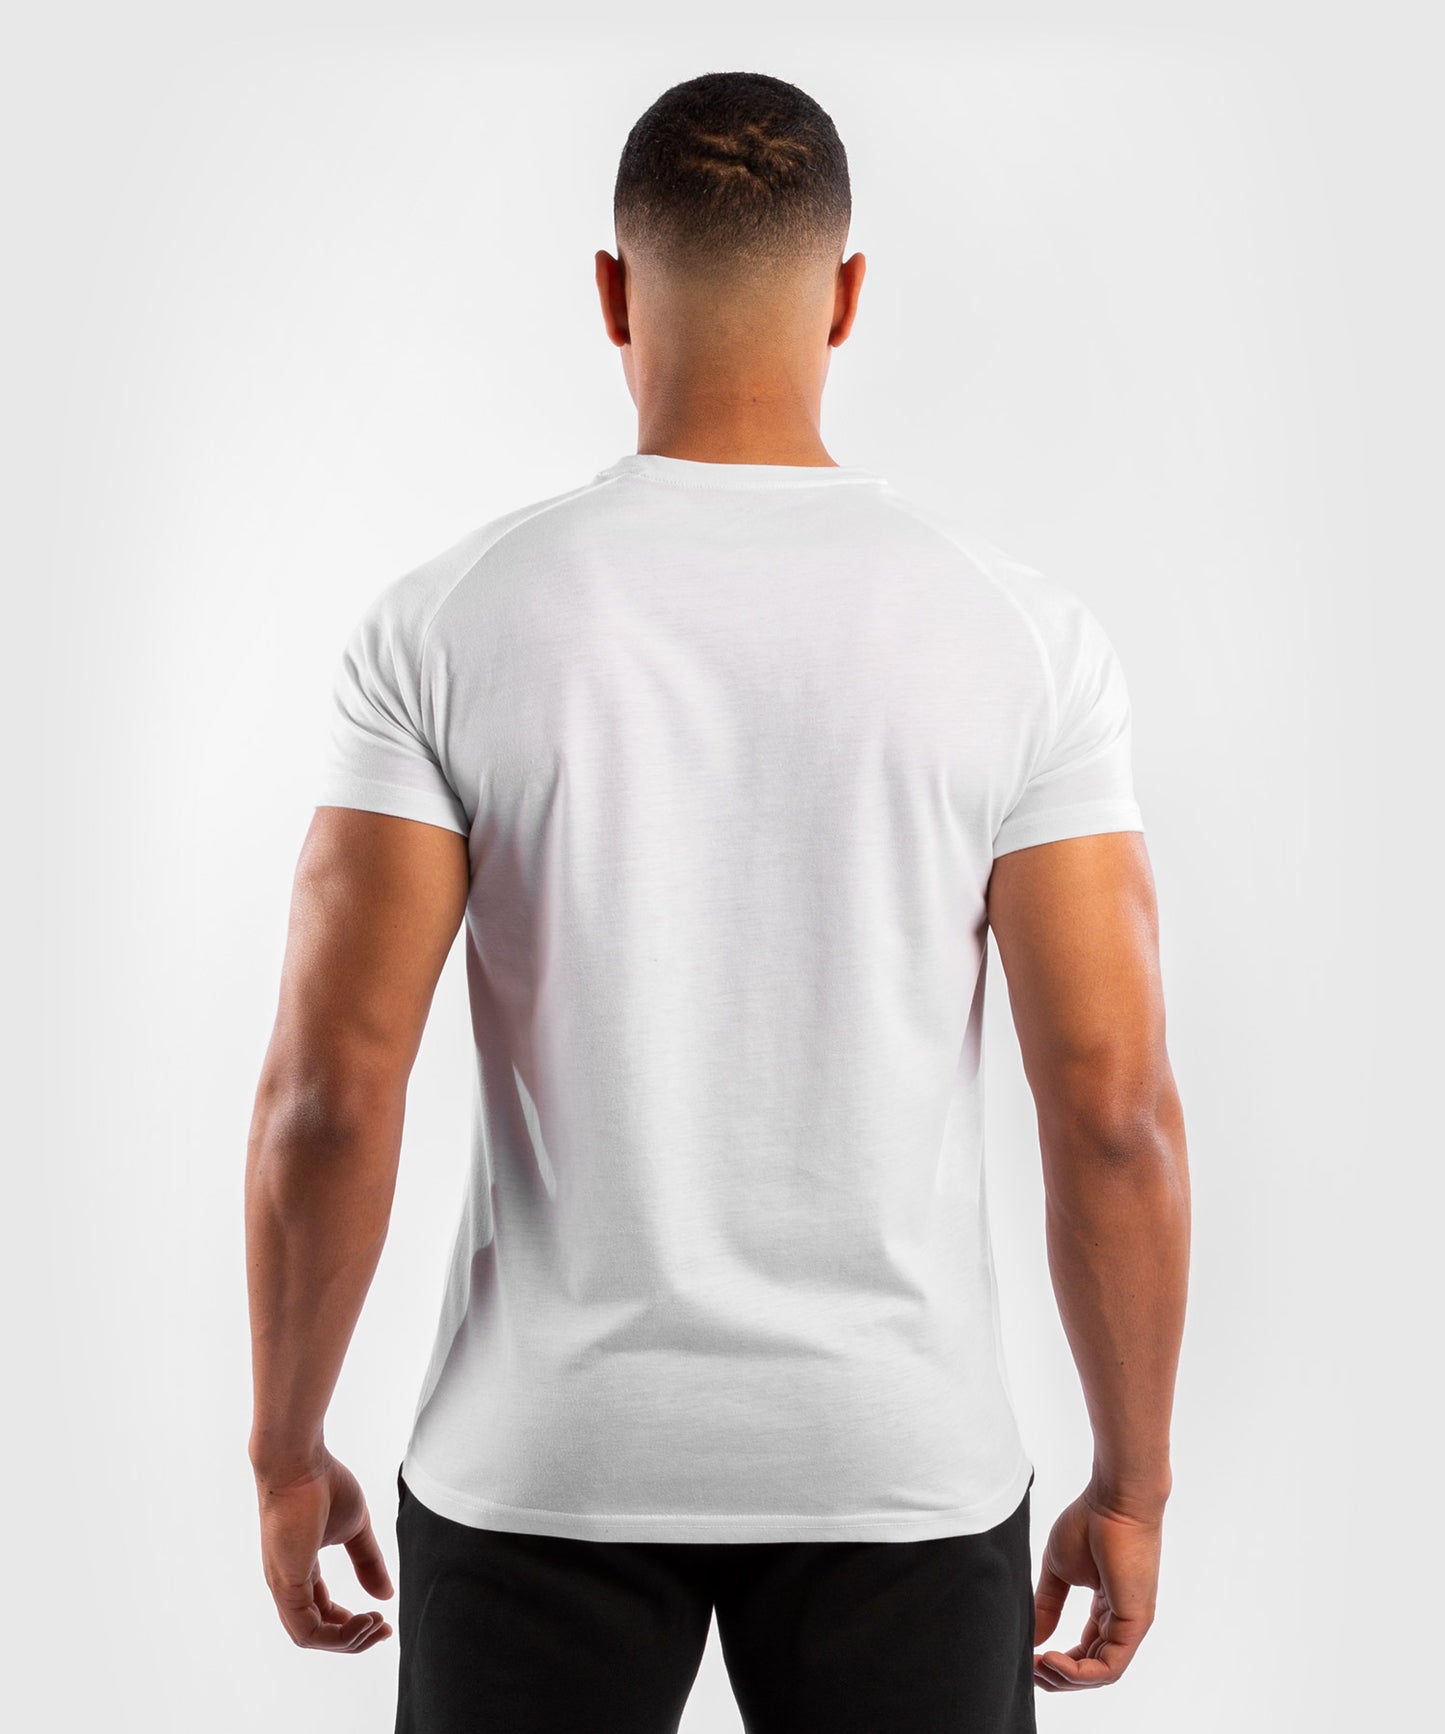 Camiseta Para Hombre UFC Venum Replica - Blanco